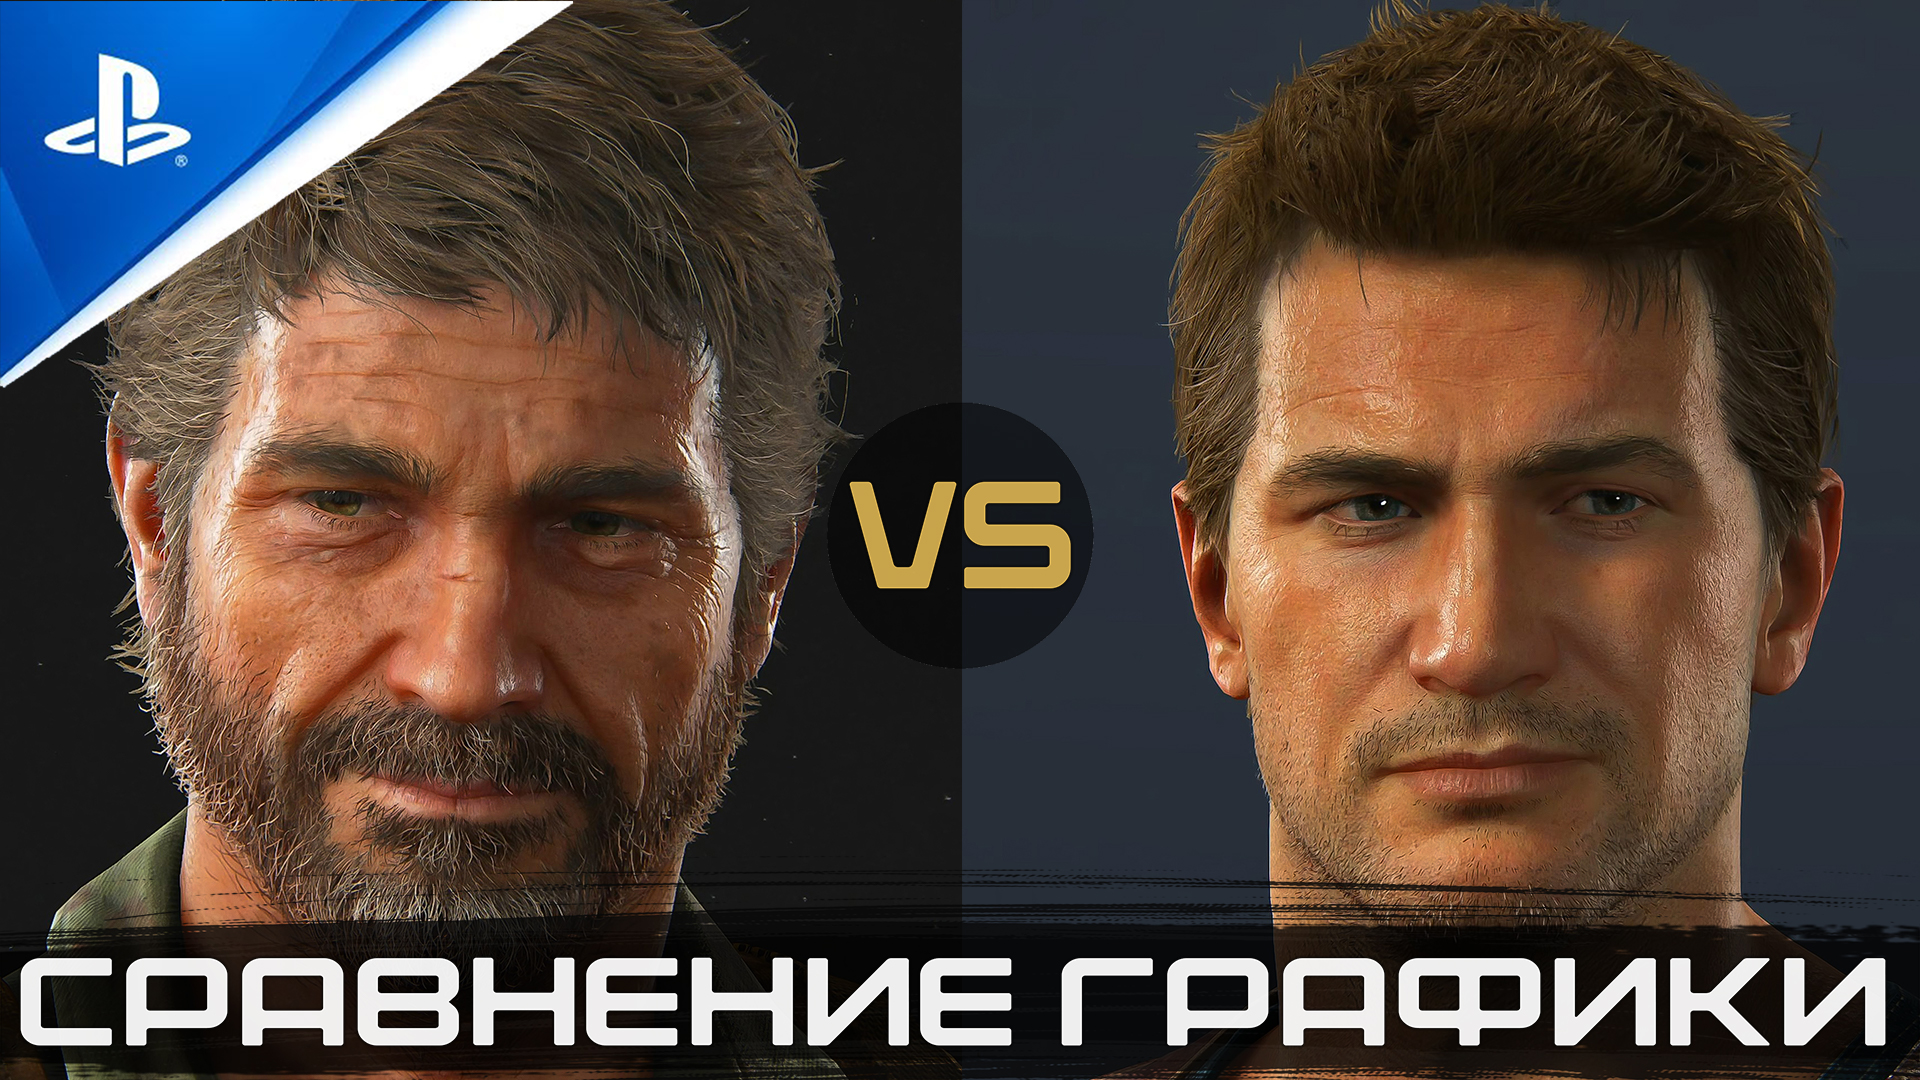 «Битва Титанов» Сравнение Графики | The Last of Us Part II vs. Uncharted 4 | PS4 Pro